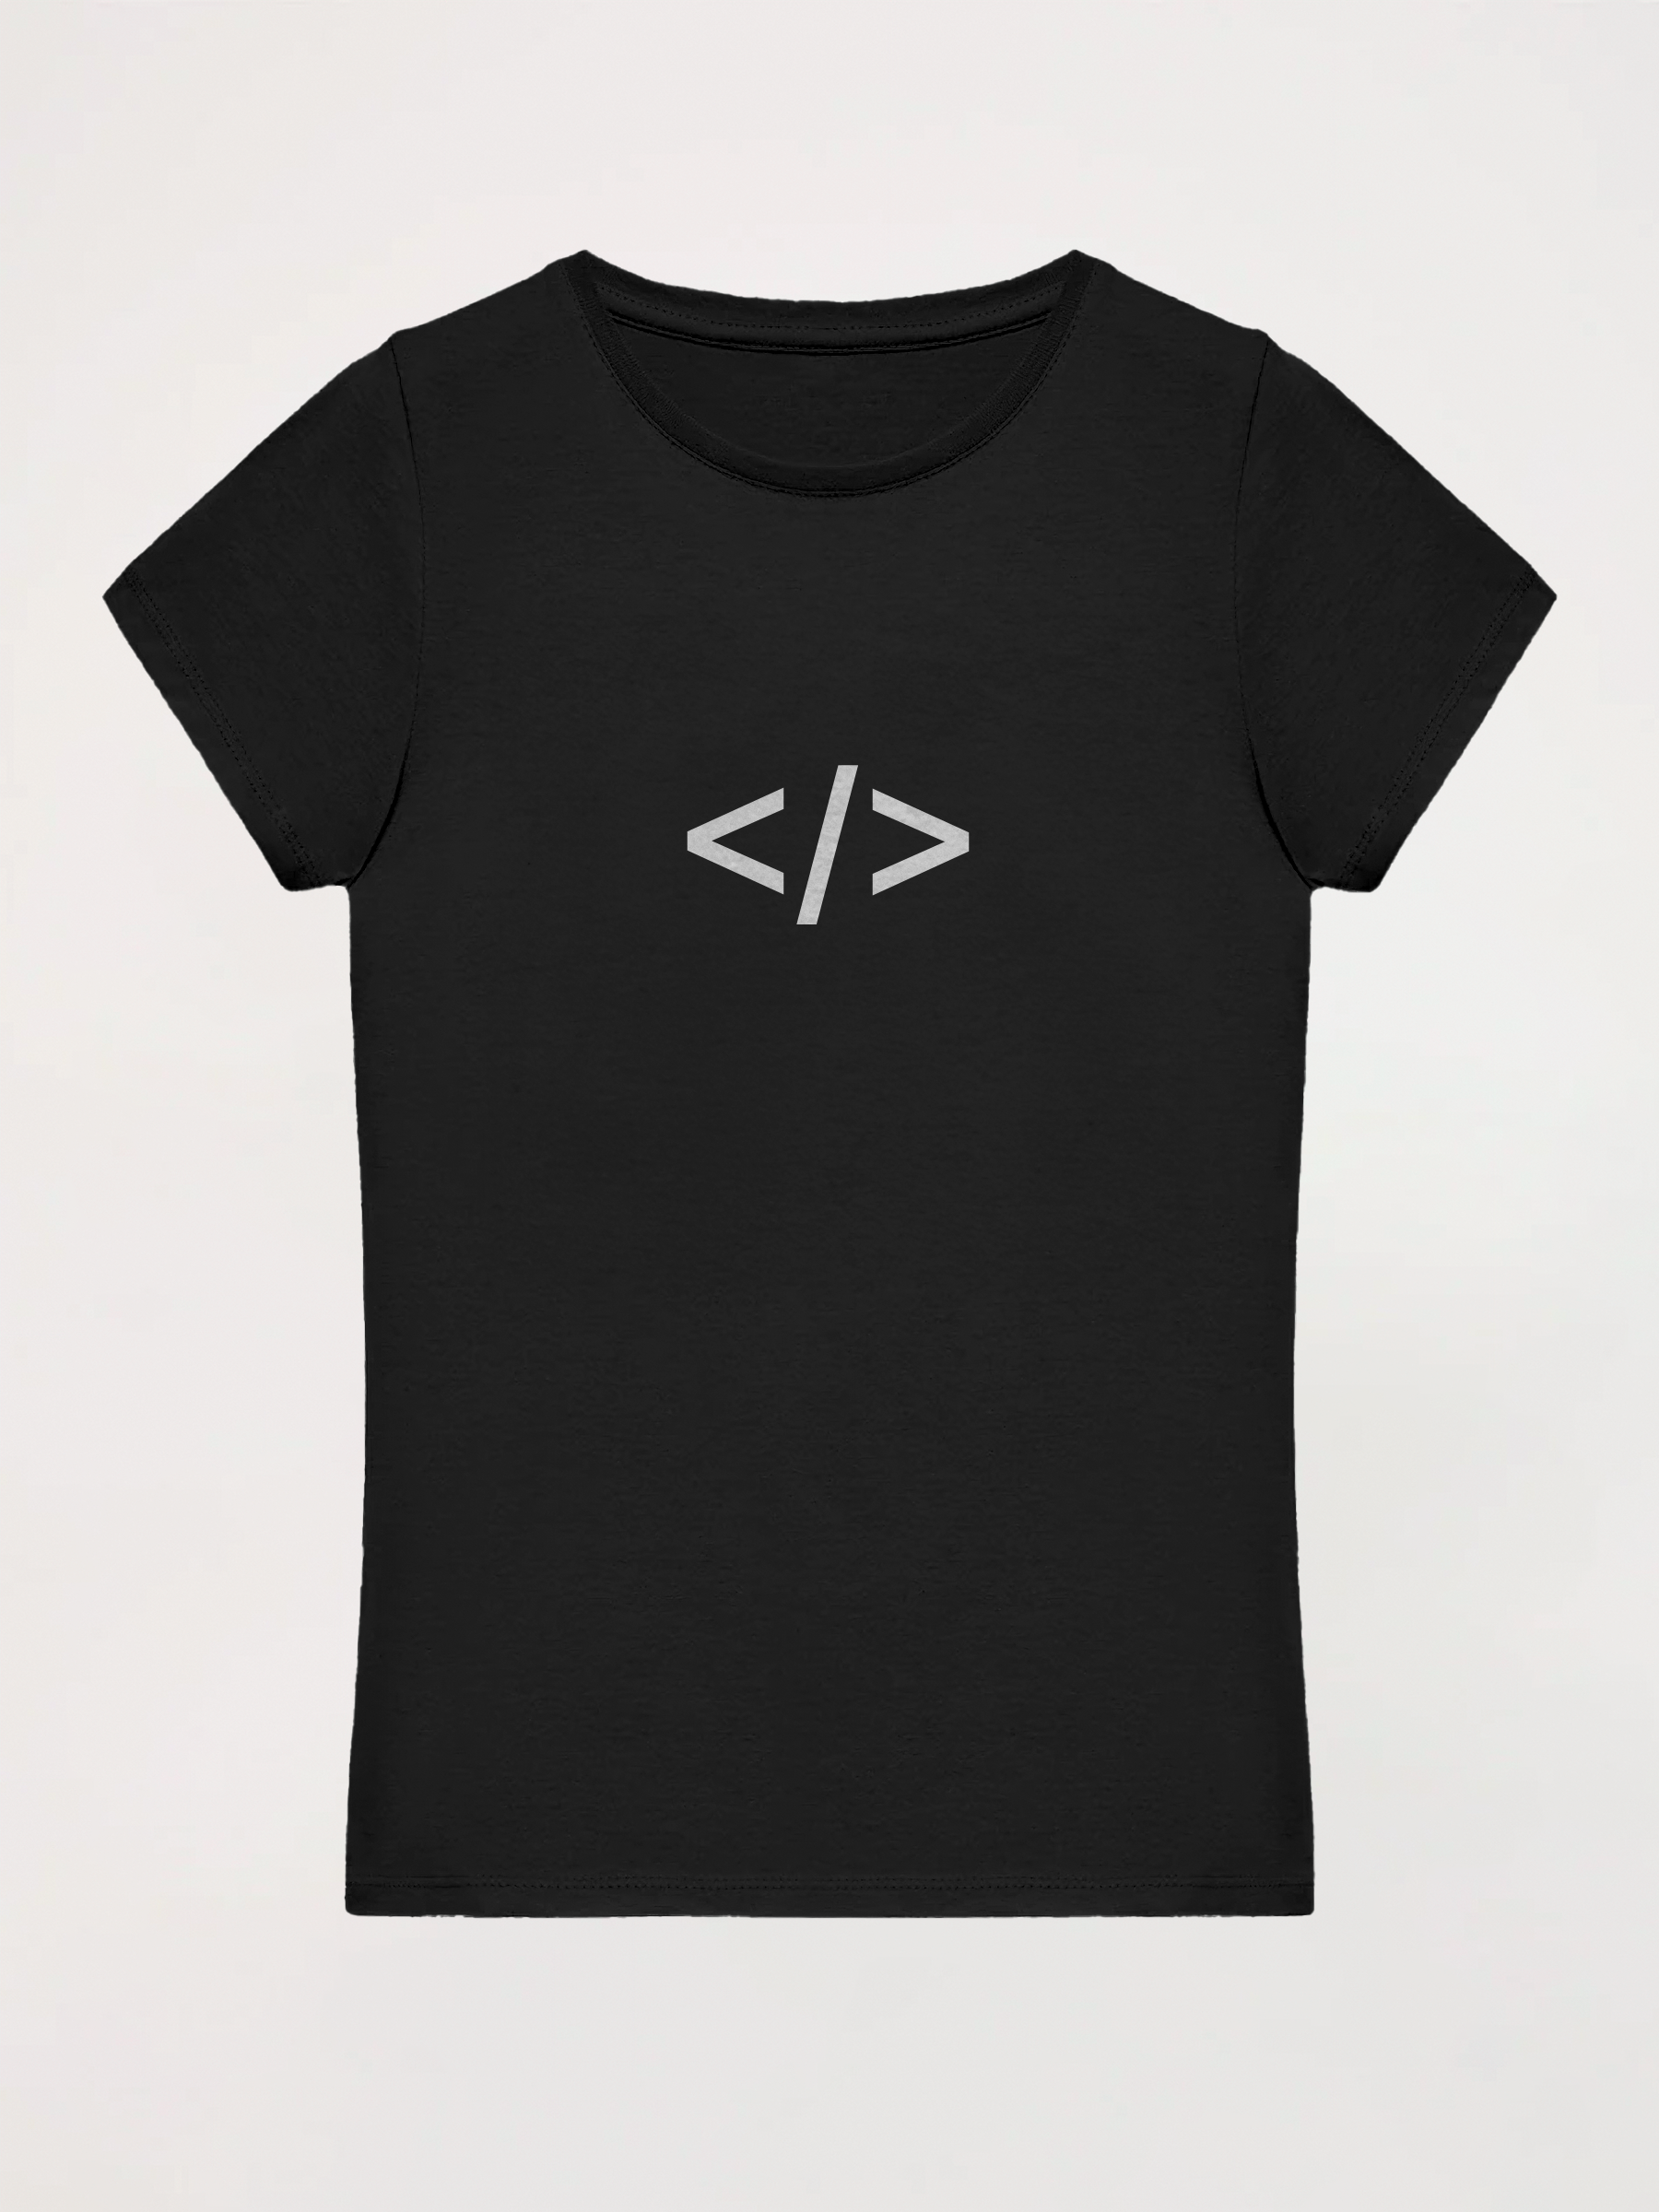 Camiseta mujer Coding